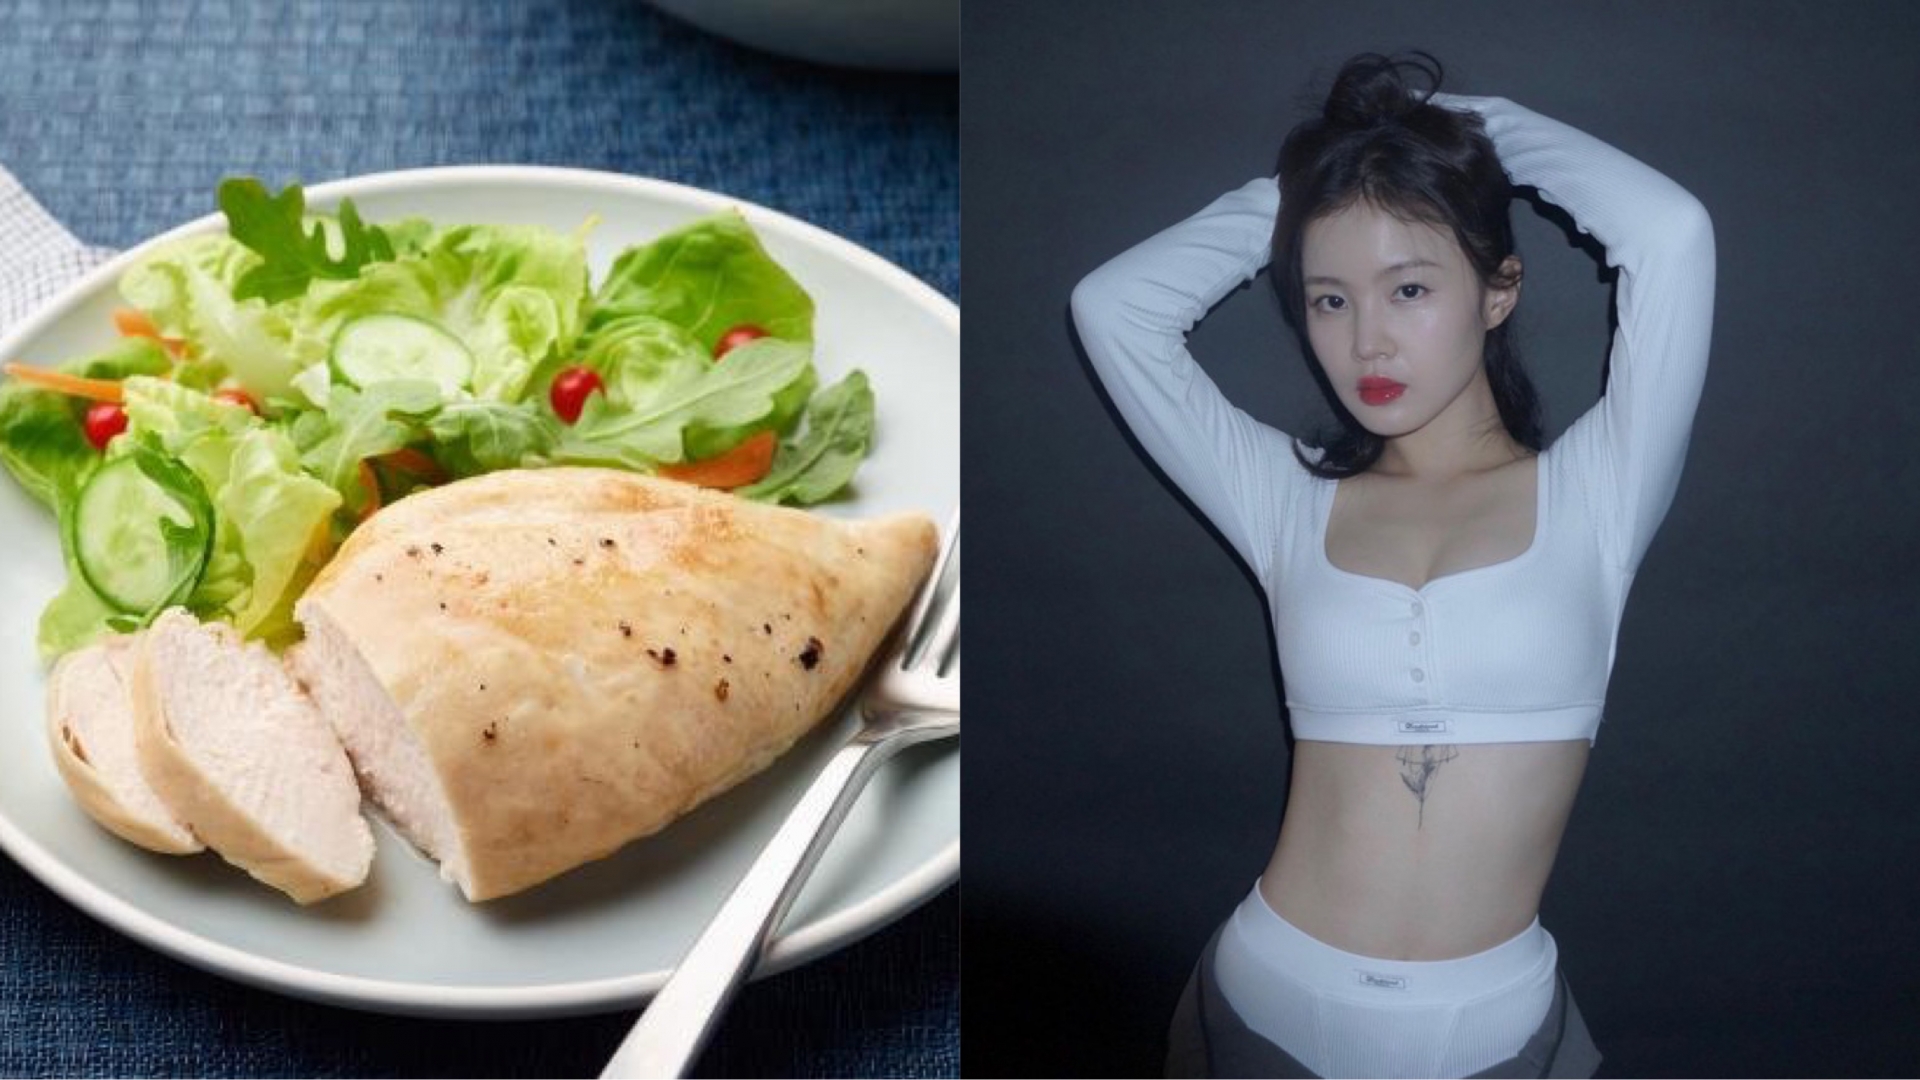 Ức gà và salad là món ăn quen thuộc trong quá trình ăn kiêng của Lee Hi. Người đẹp từng chia sẻ rằng, khi cần ép cân cô sẽ ăn hai món này liên tục vào bữa tối.